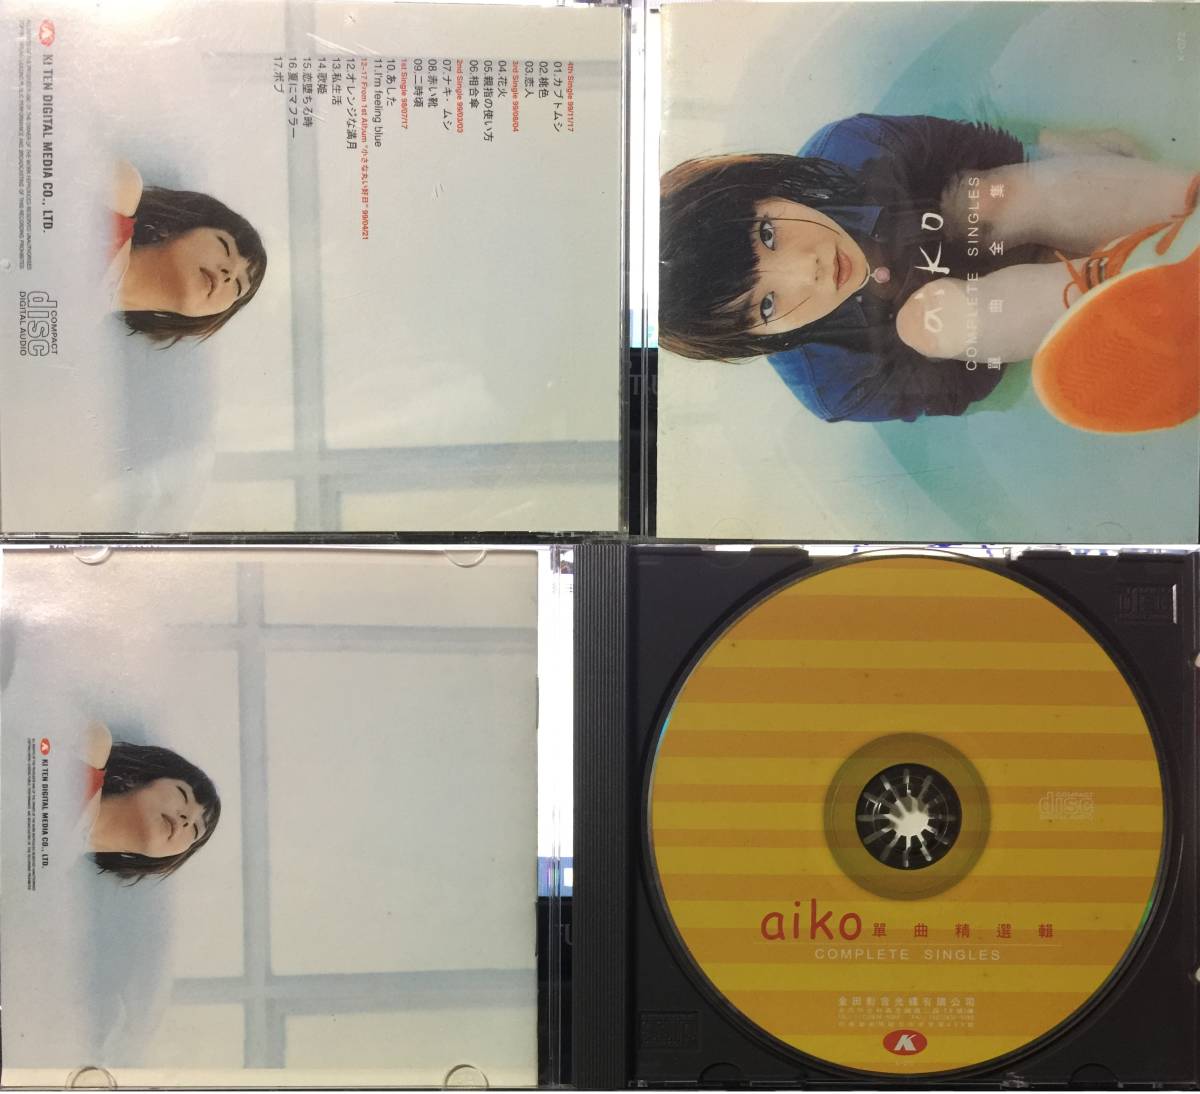 代購代標第一品牌 樂淘letao Aiko Best Singles Collection 單曲精選輯 Complete Singles 單曲全集